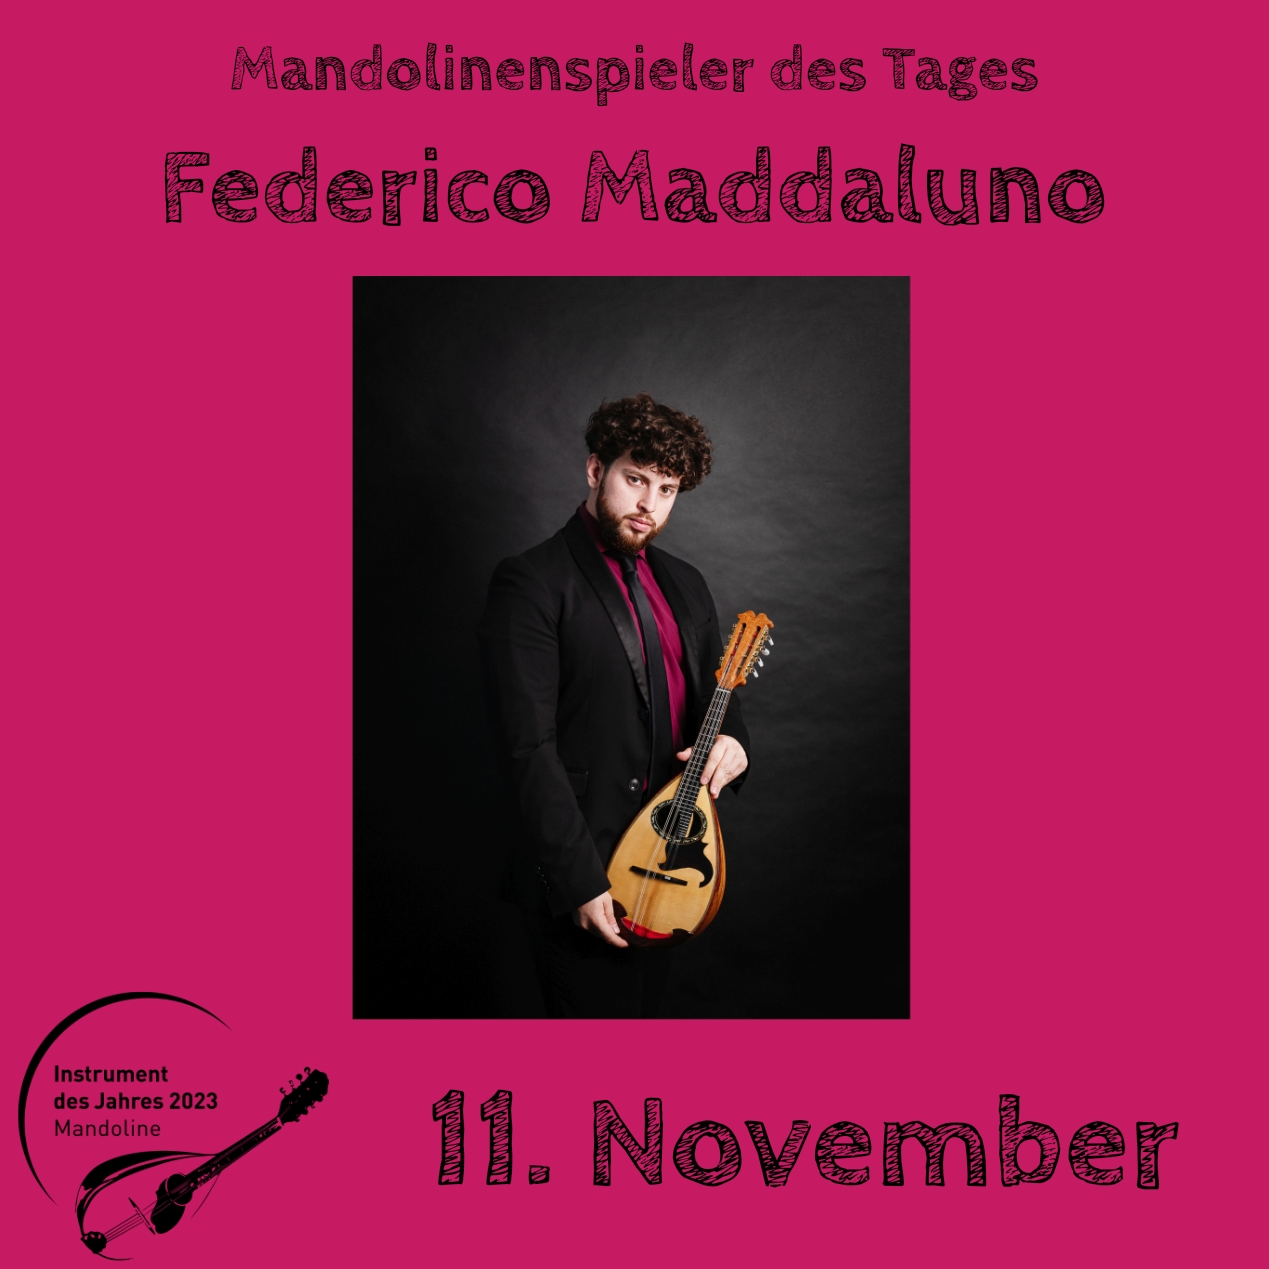 11. November - Federico Maddaluno Instrument des Jahres 2023 Mandolinenspieler Mandolinenspielerin des Tages